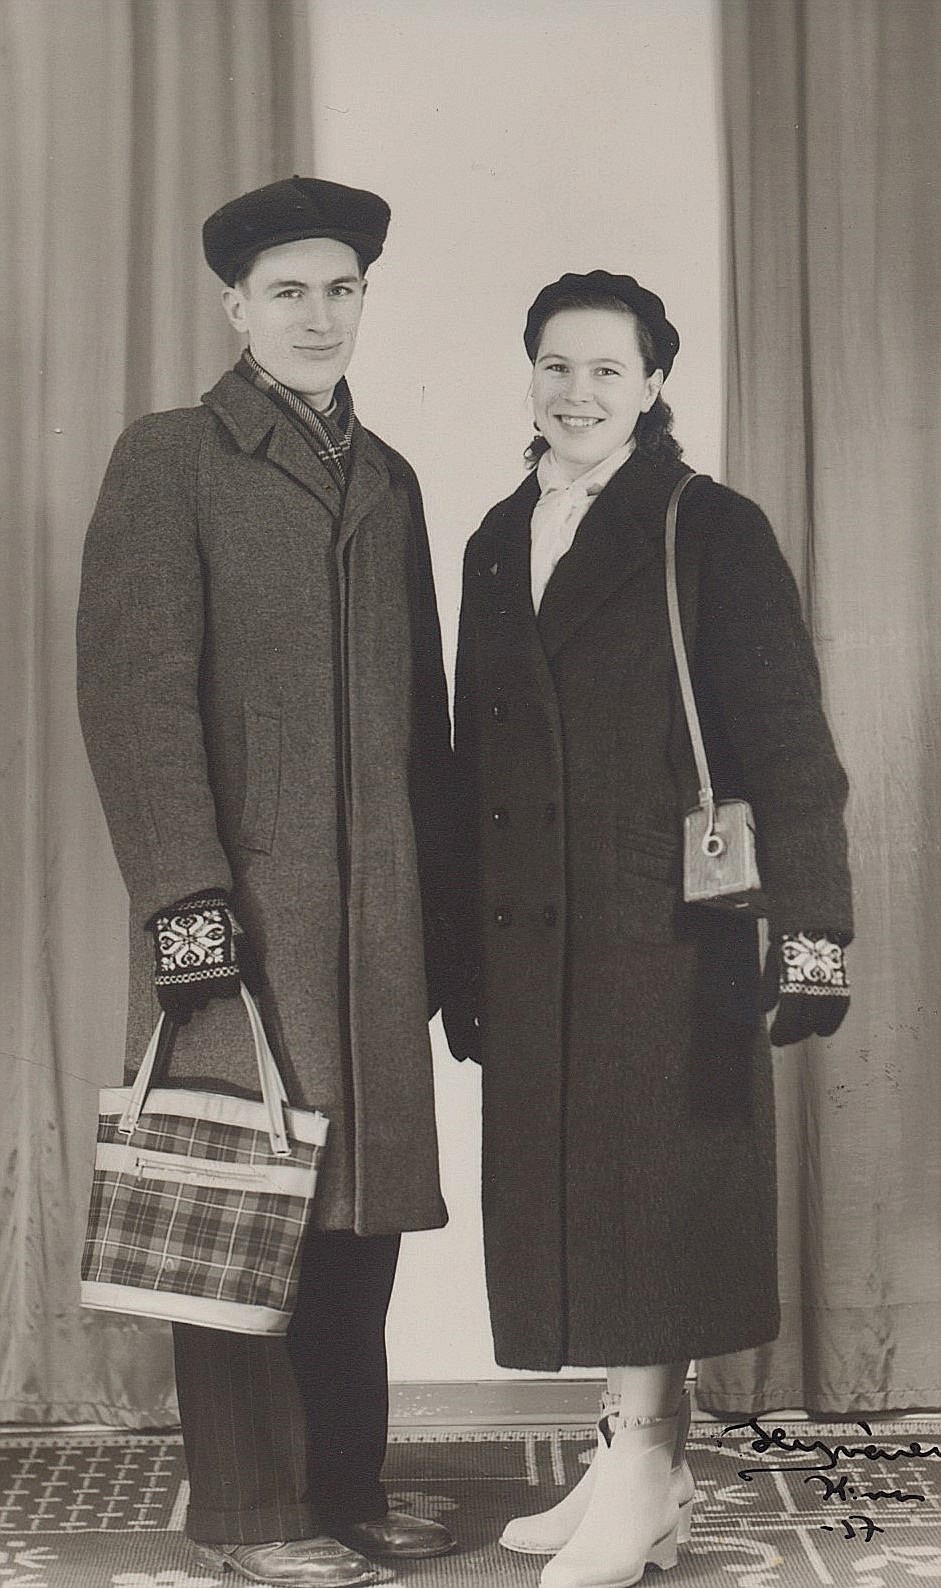 På Hyvönens foto från 1957 så står Ruben och Ellen Ånäs. Ellen har den nyinköpta kameran under armen.